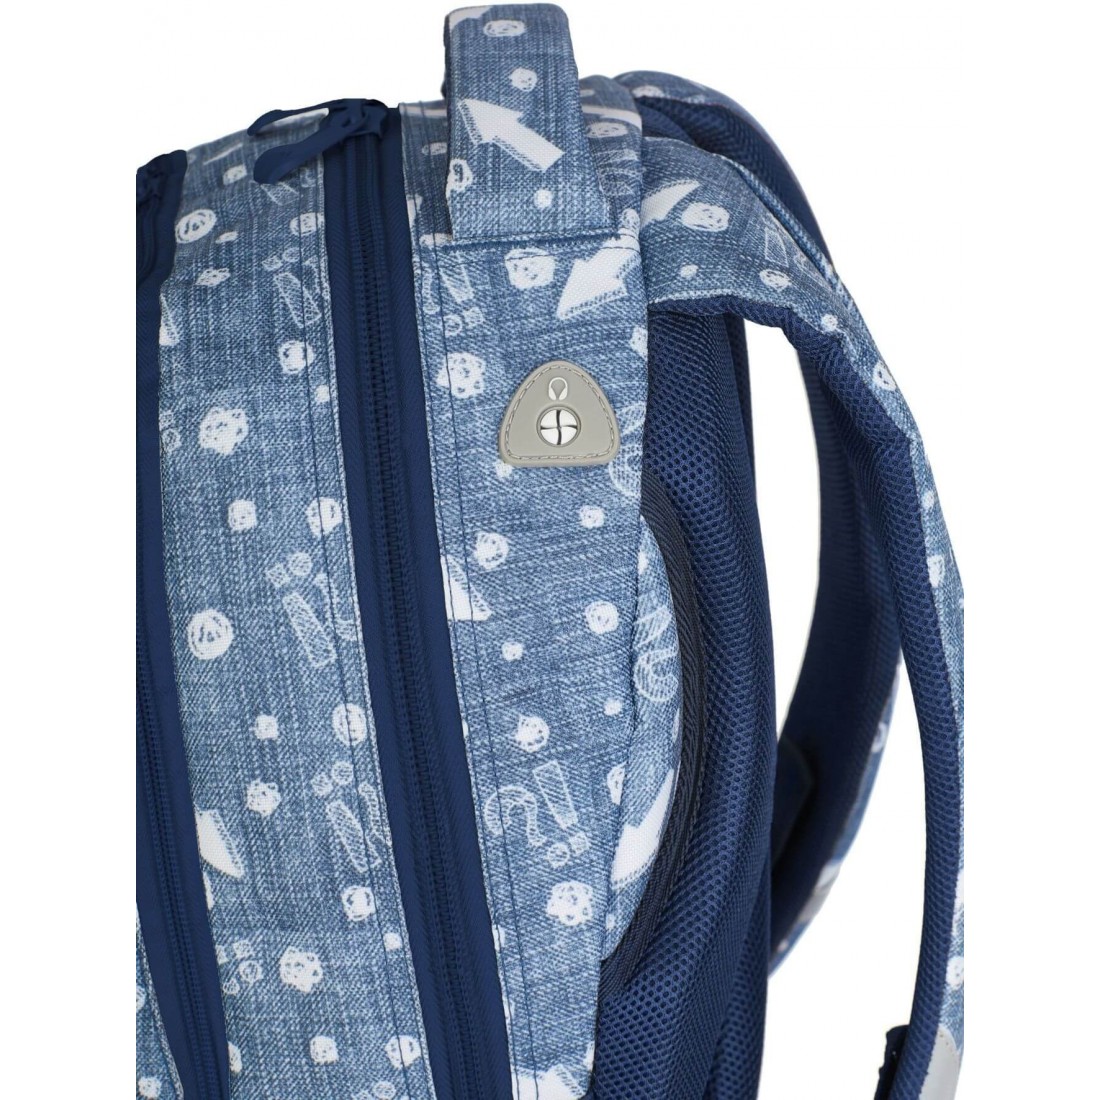 Plecak młodzieżowy dla dziewczyny Head HD-345 C niebieski w strzałki - plecak-tornister.pl